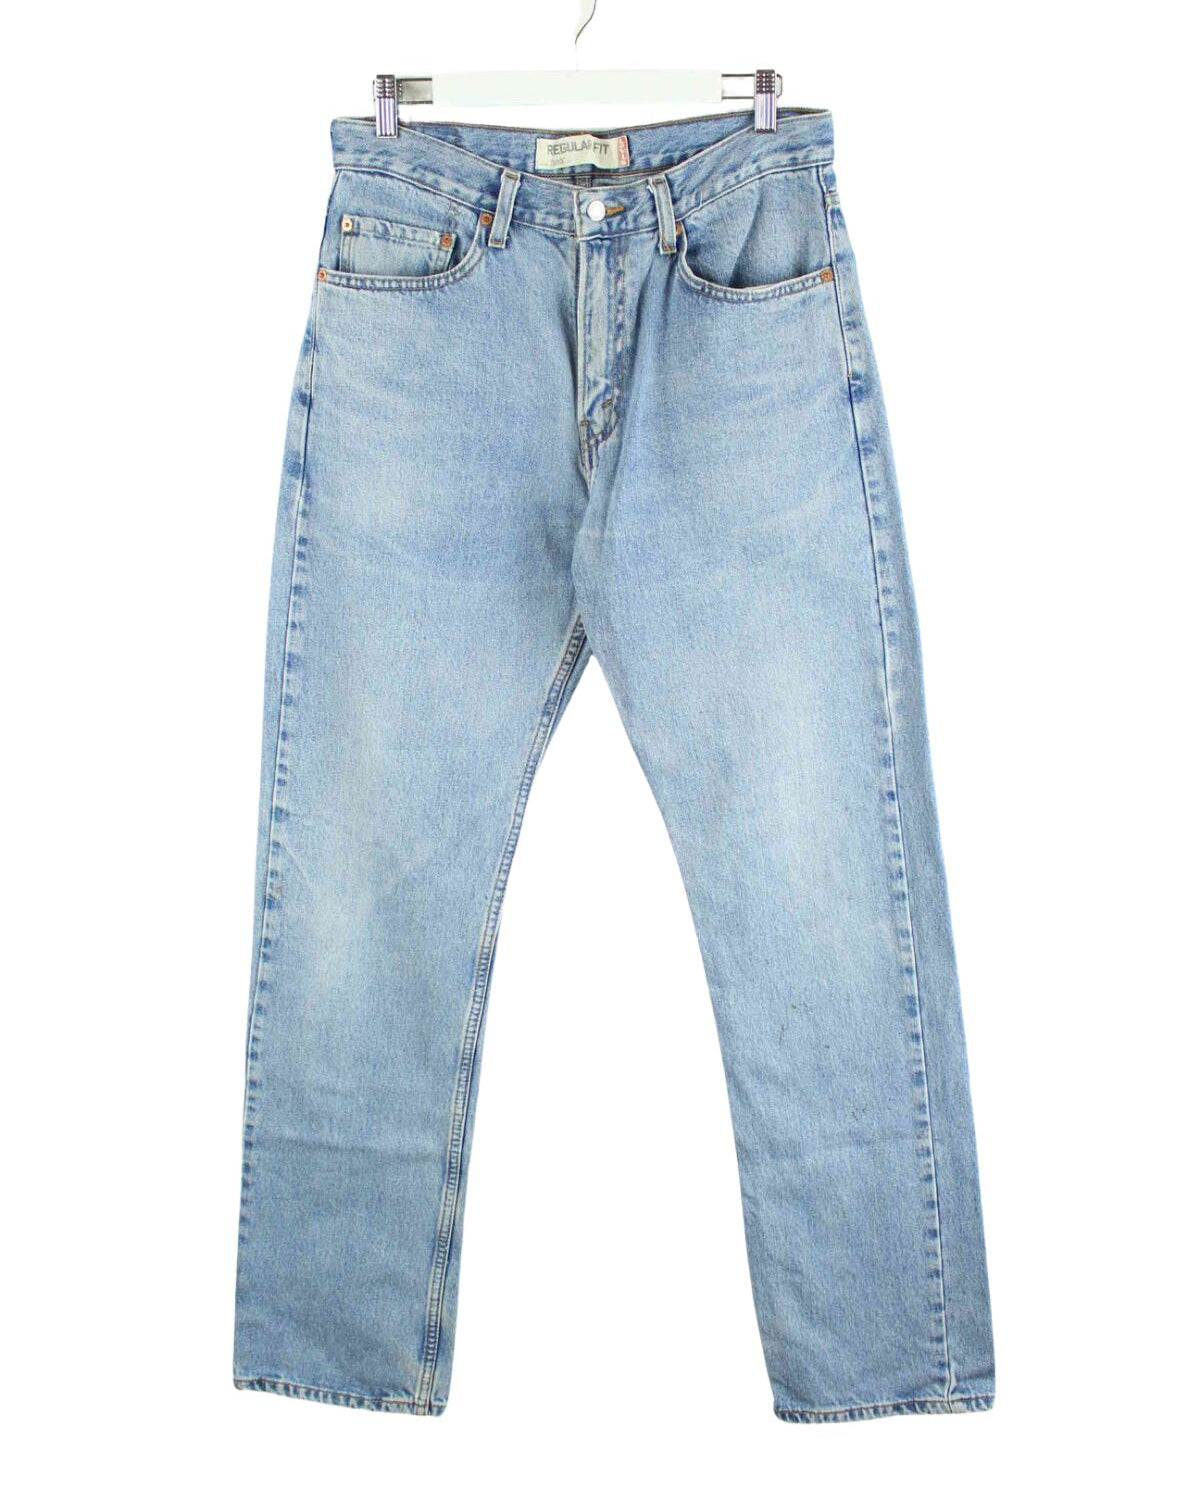 Levi's 550 Regular Fit Jeans Blau W32 L34 (front image)